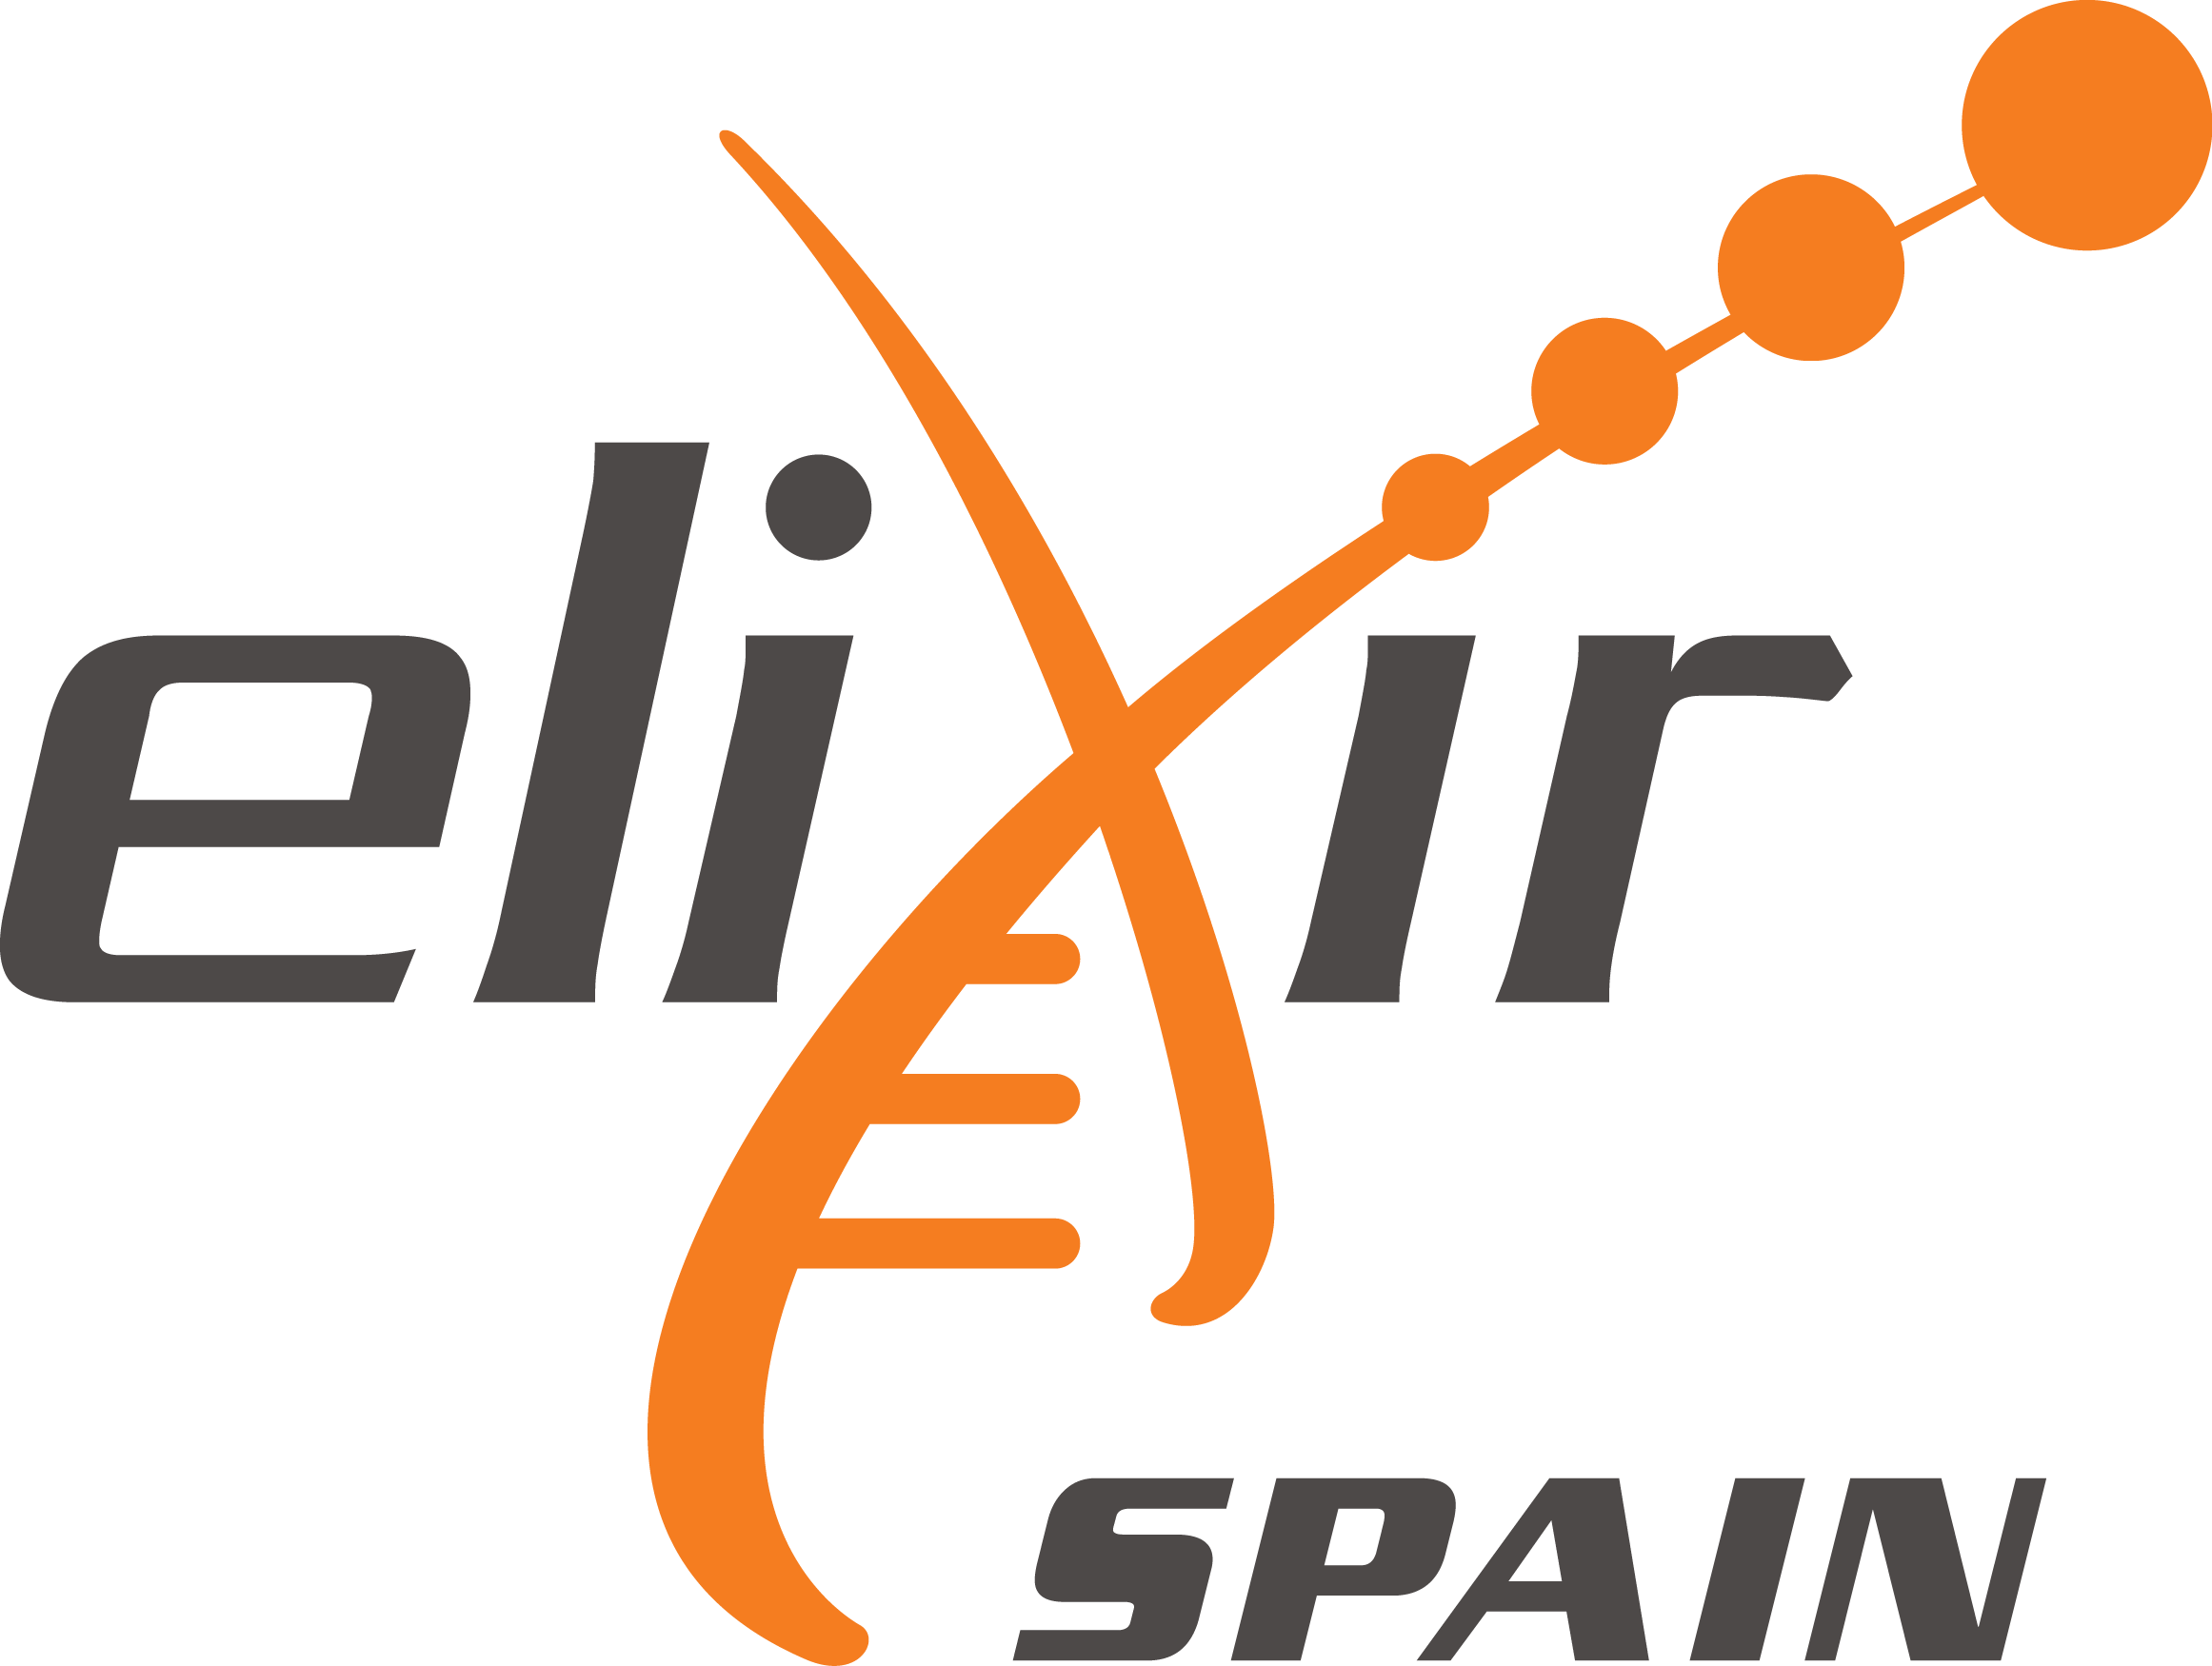 ELIXIR Spain logo